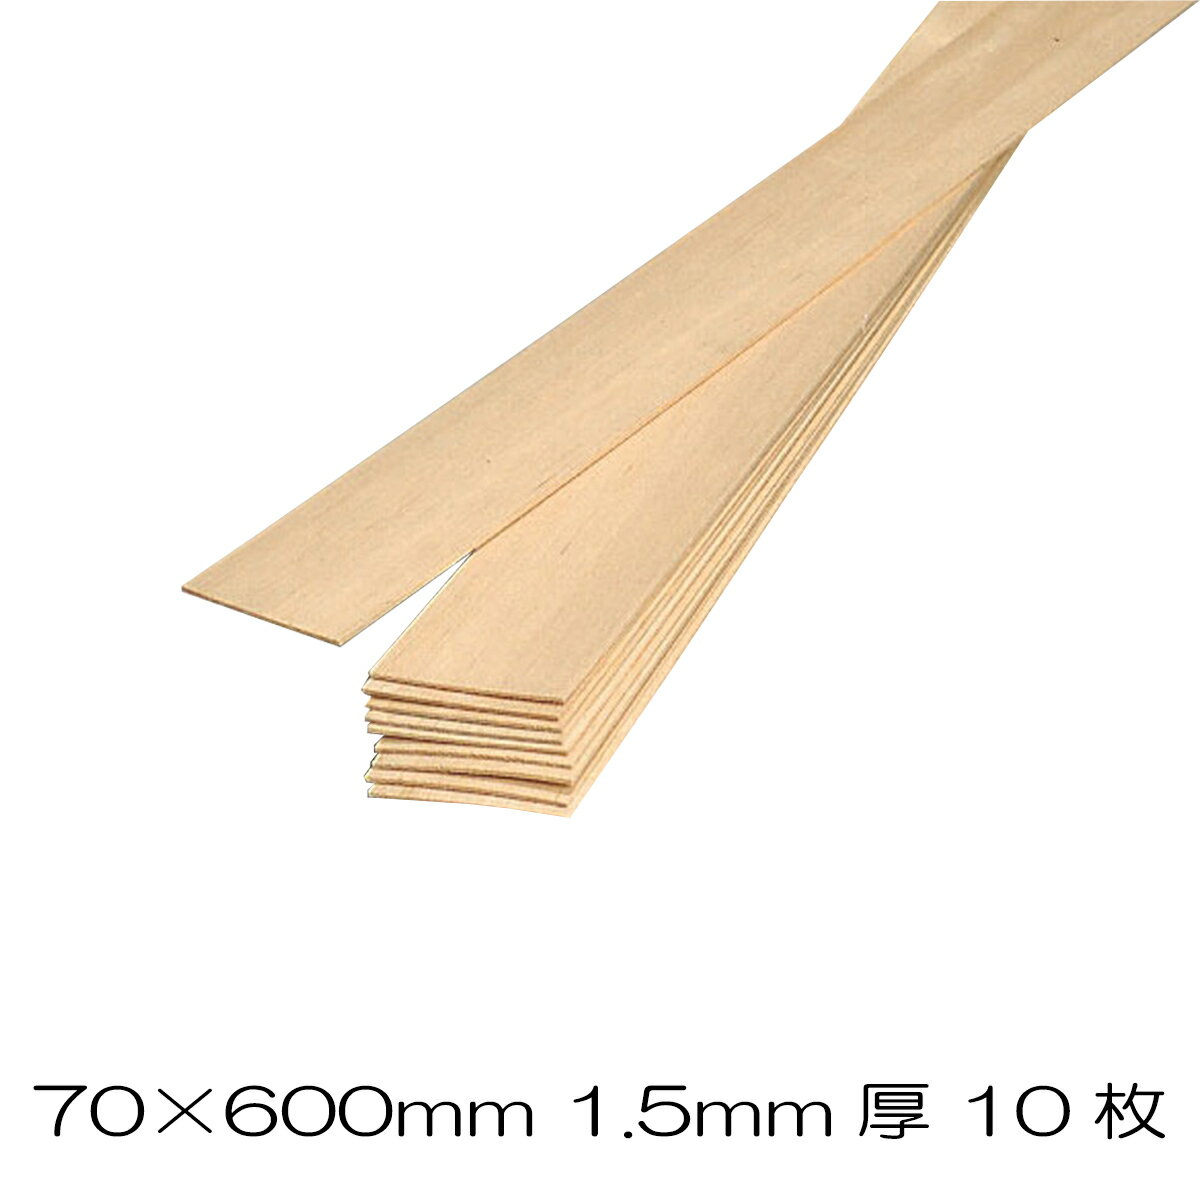 バルサ板材 70×600mm 10枚組 1.5mm 【 工作 木材 木工 棒 バルサ バルサ板 板材 木製 木 木の板 角材 】